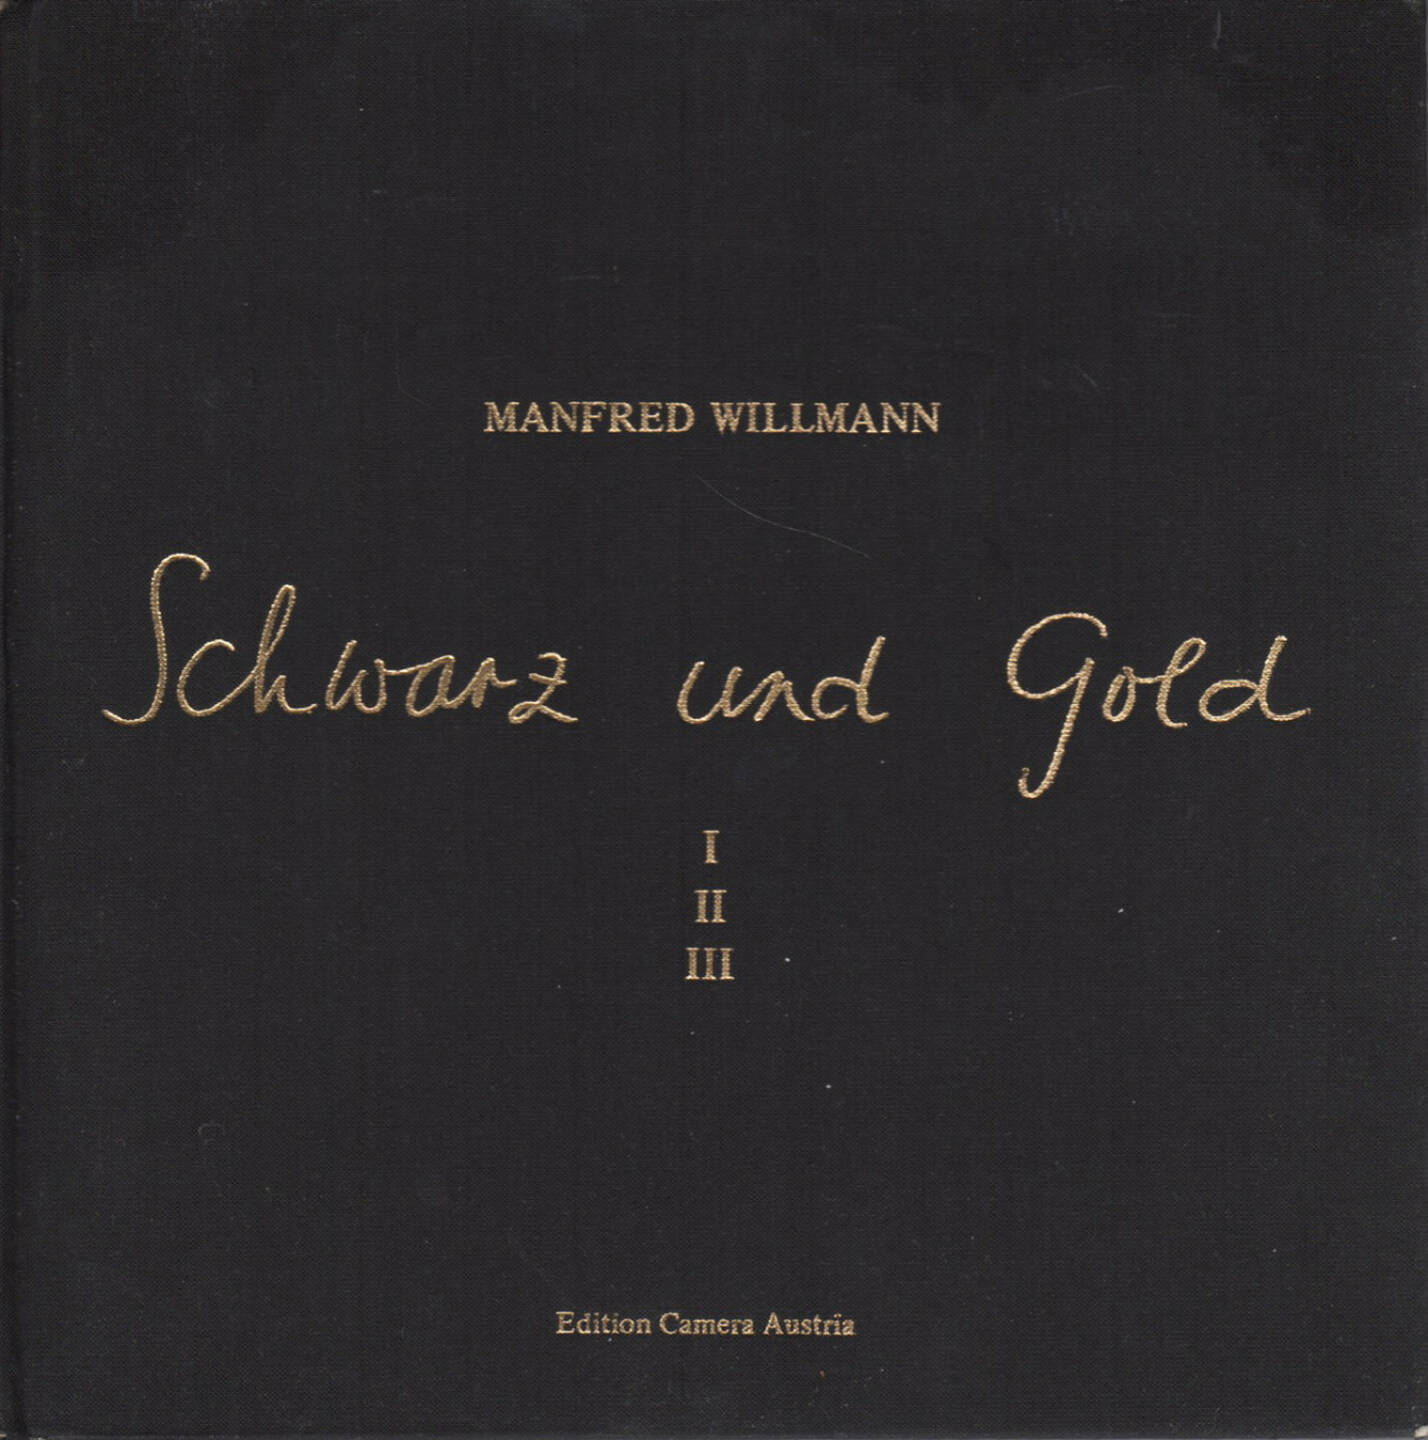 Manfred Willmann - Schwarz und Gold, Edition Camera Austria 1981, Cover - http://josefchladek.com/book/manfred_willmann_-_schwarz_und_gold